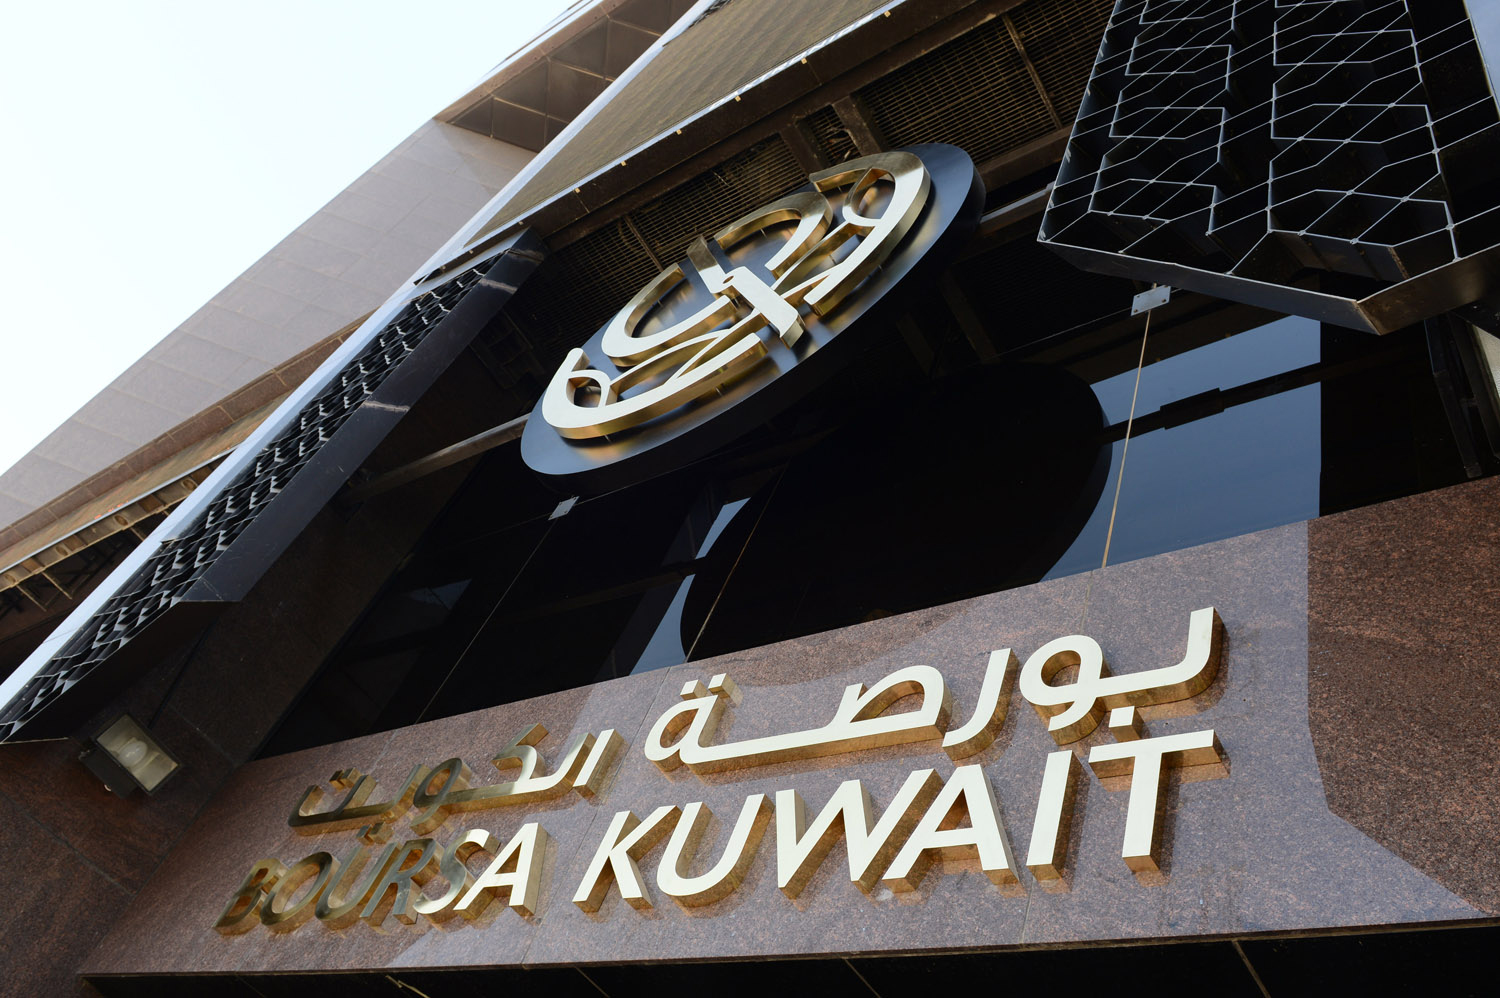 بورصة الكويت تغلق تعاملاتها على انخفاض المؤشر العام 4ر59 نقطة ليبلغ 42ر7418 نقطة بنسبة انخفاض 80ر0 في المئة وبقيمة 3ر69 مليون دينار                                                                                                                       